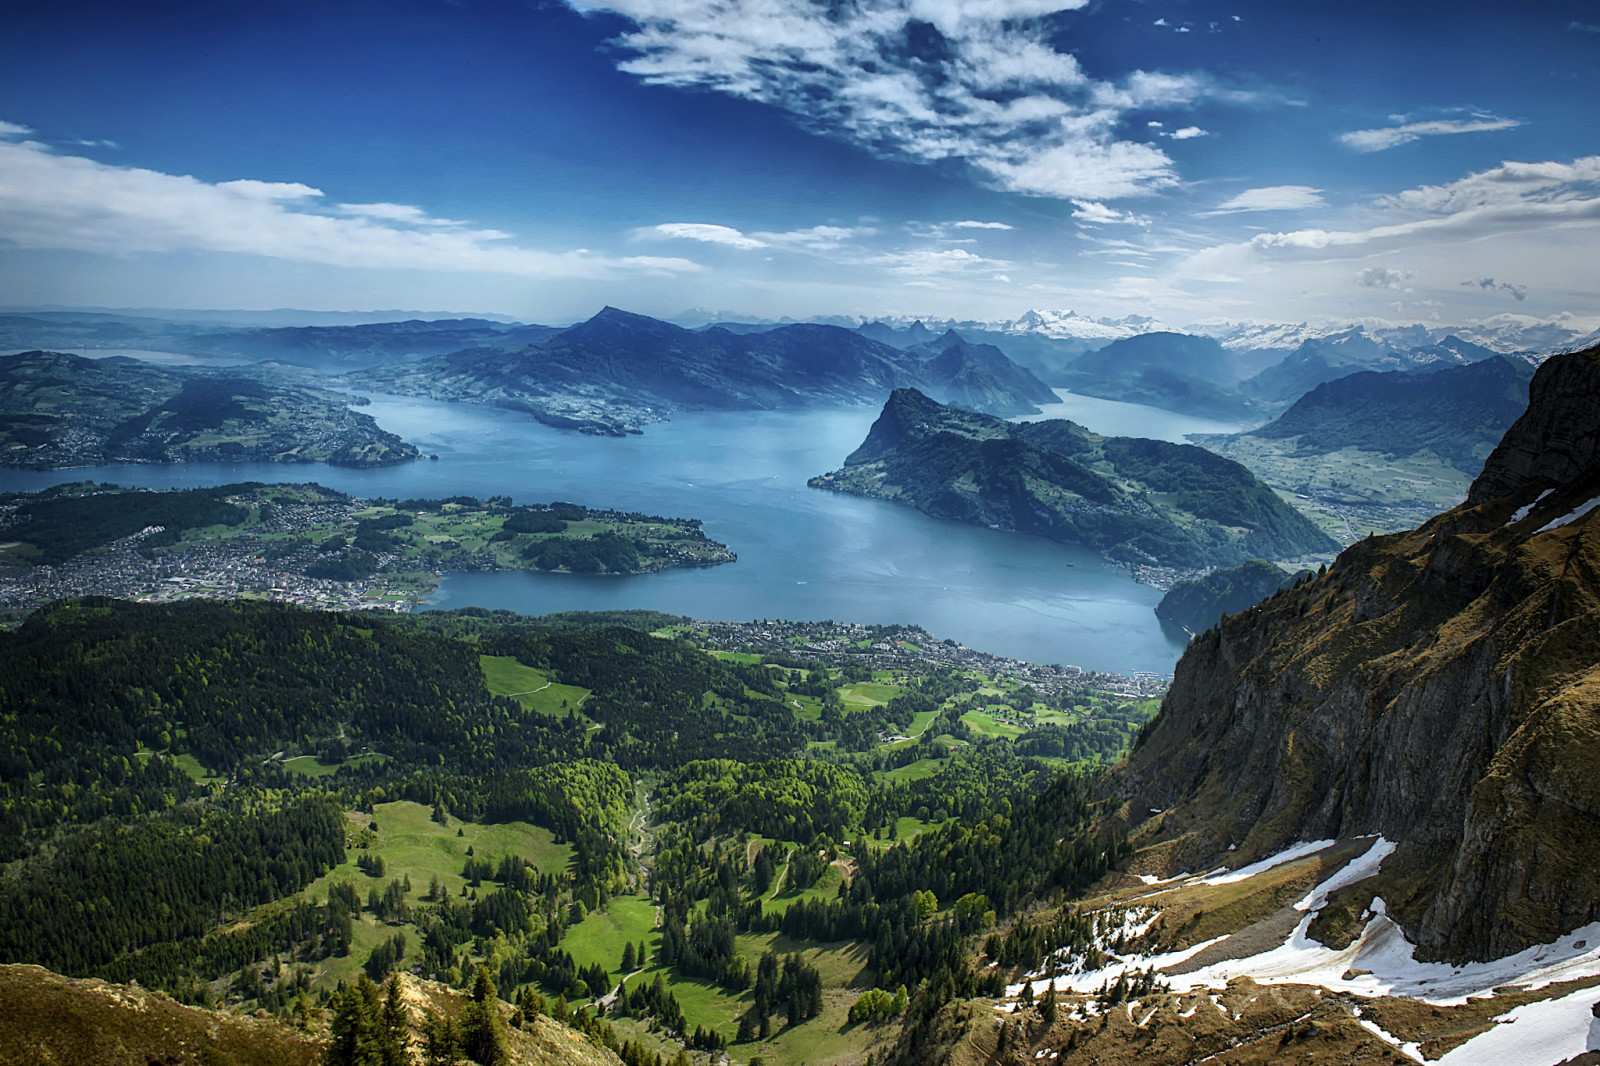 ประเทศสวิสเซอร์แลนด์, ทะเลสาป, ภูเขา, ทัศนียภาพ, มุมมองจากด้านบน, ทะเลสาบลูเซิร์น